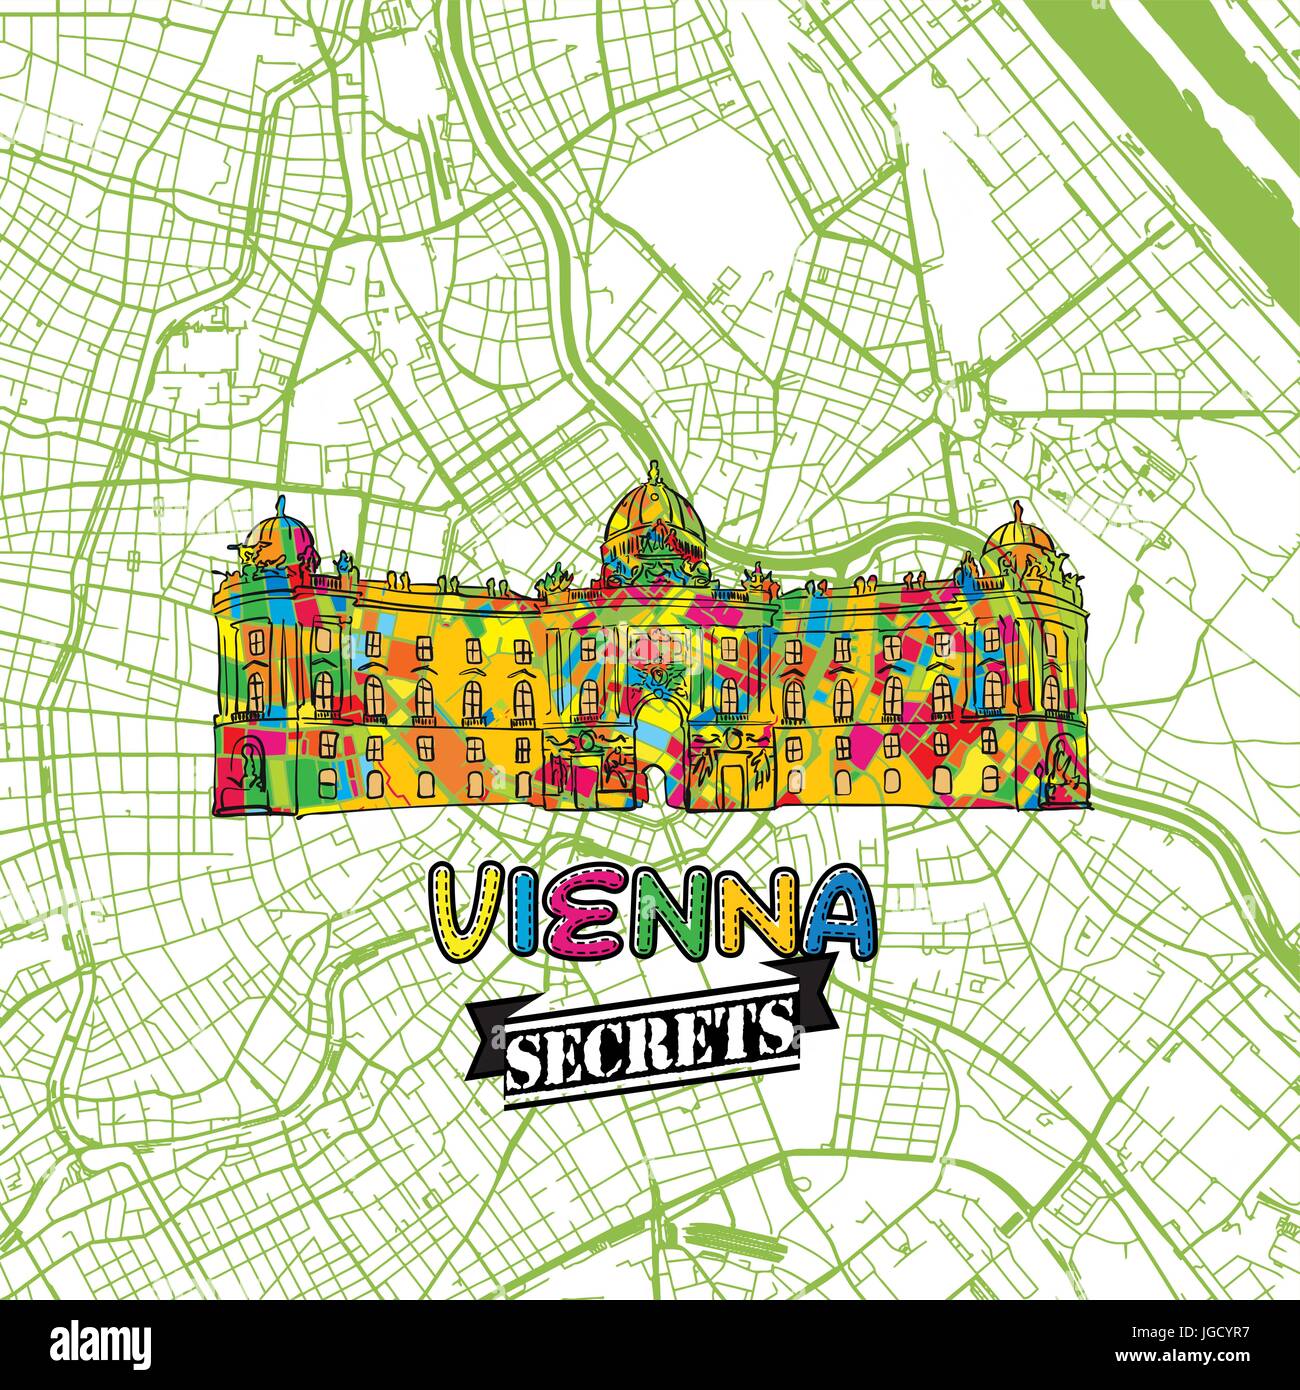 Wien reisen Geheimnisse Art Map für die Zuordnung von Experten und Reiseführer. Handgemachte Stadt Logo, Typo-Abzeichen und Hand gezeichnete Vektor-Bild an der Spitze sind gruppiert und Stock Vektor